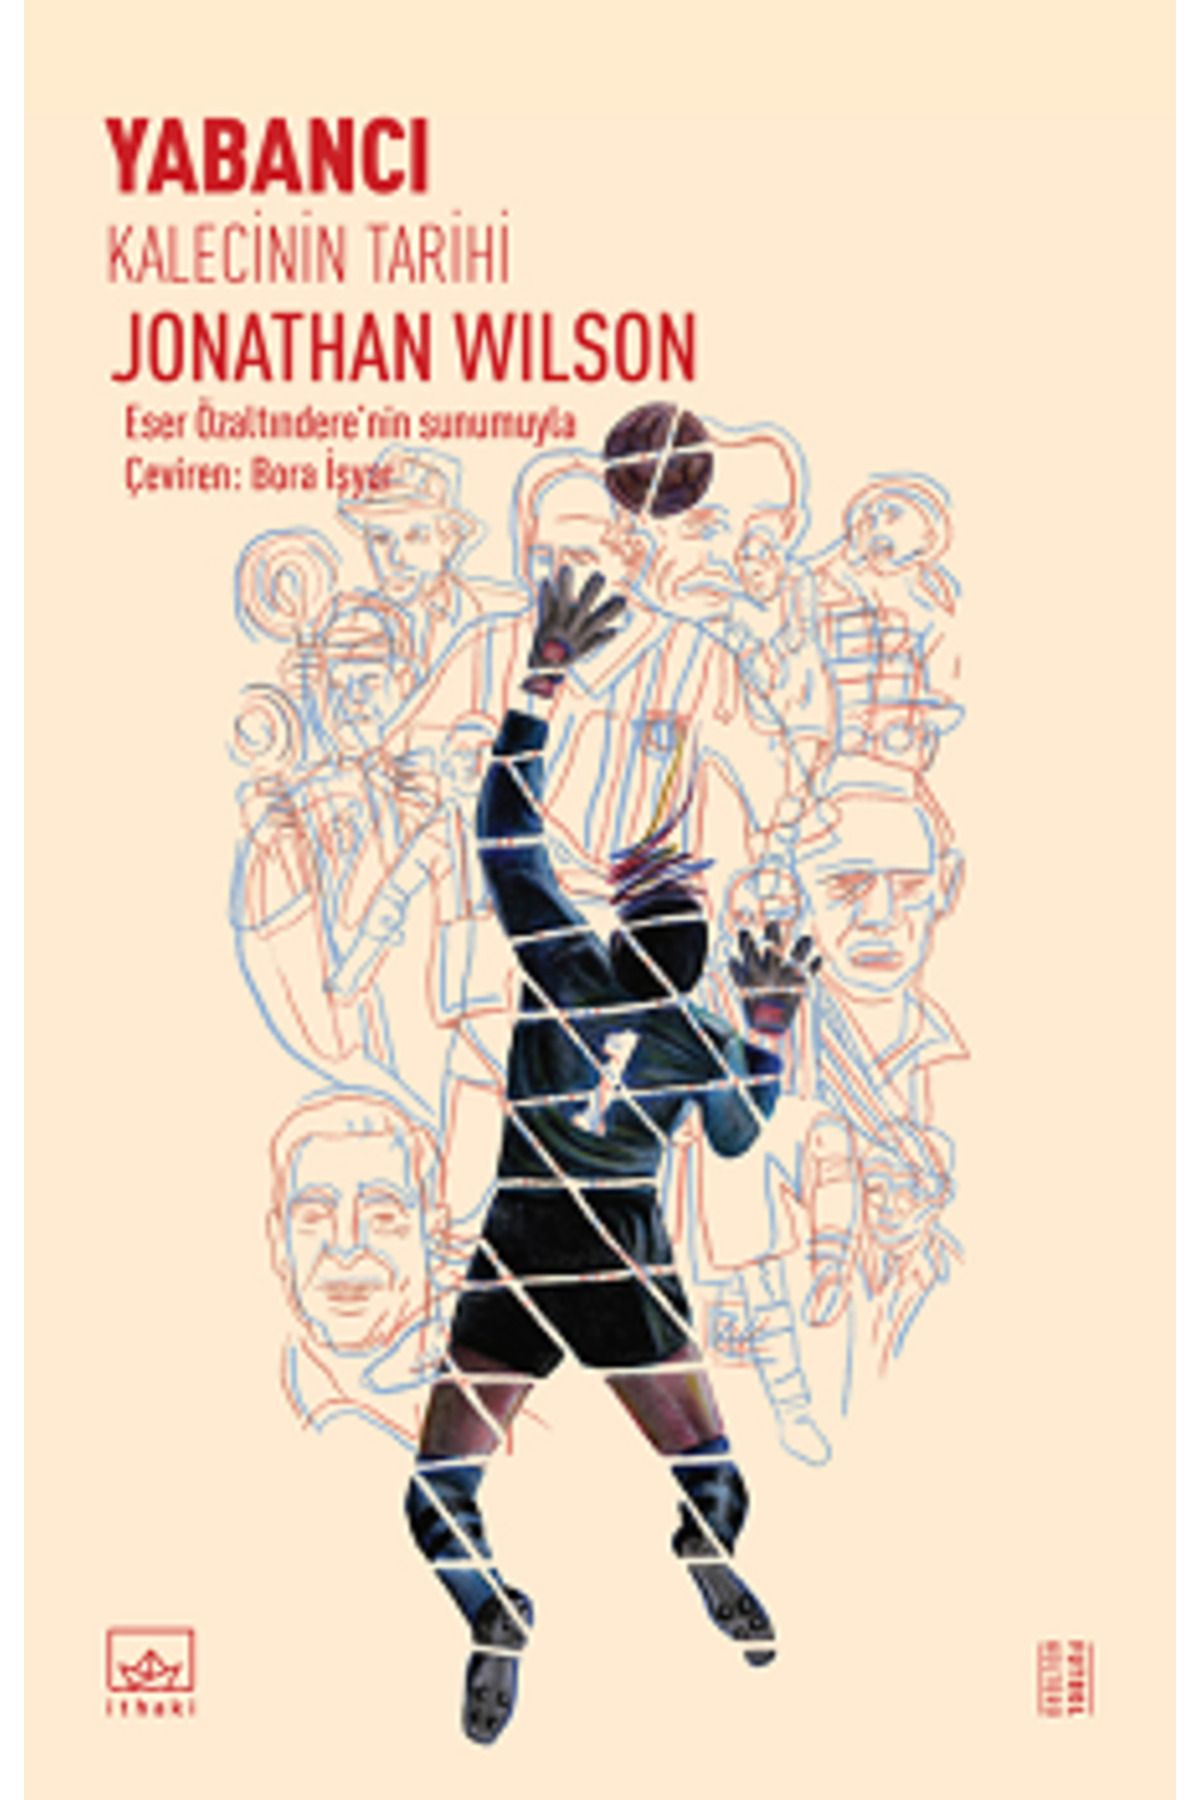 İthaki Yayınları Yabancı - Kalecinin Tarihi kitabı - Jonathan Wilson - İthaki Yayınları